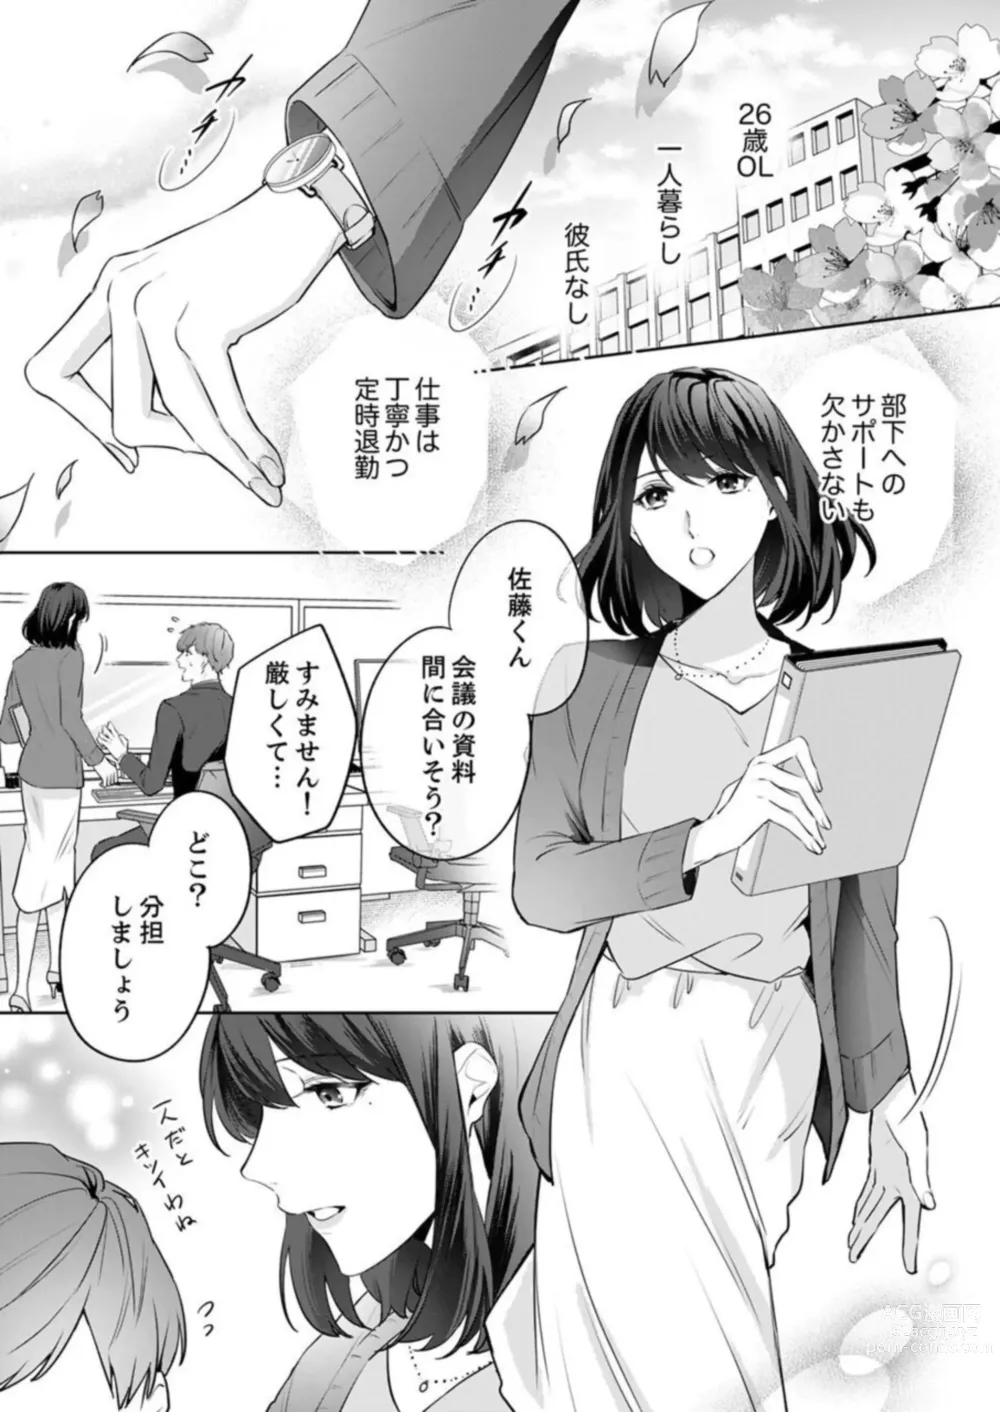 Page 3 of manga Oshi ni no Buka no Koshikudake Kisu 〜 Desuku no ue de Torotoro ni Nurete 1-2